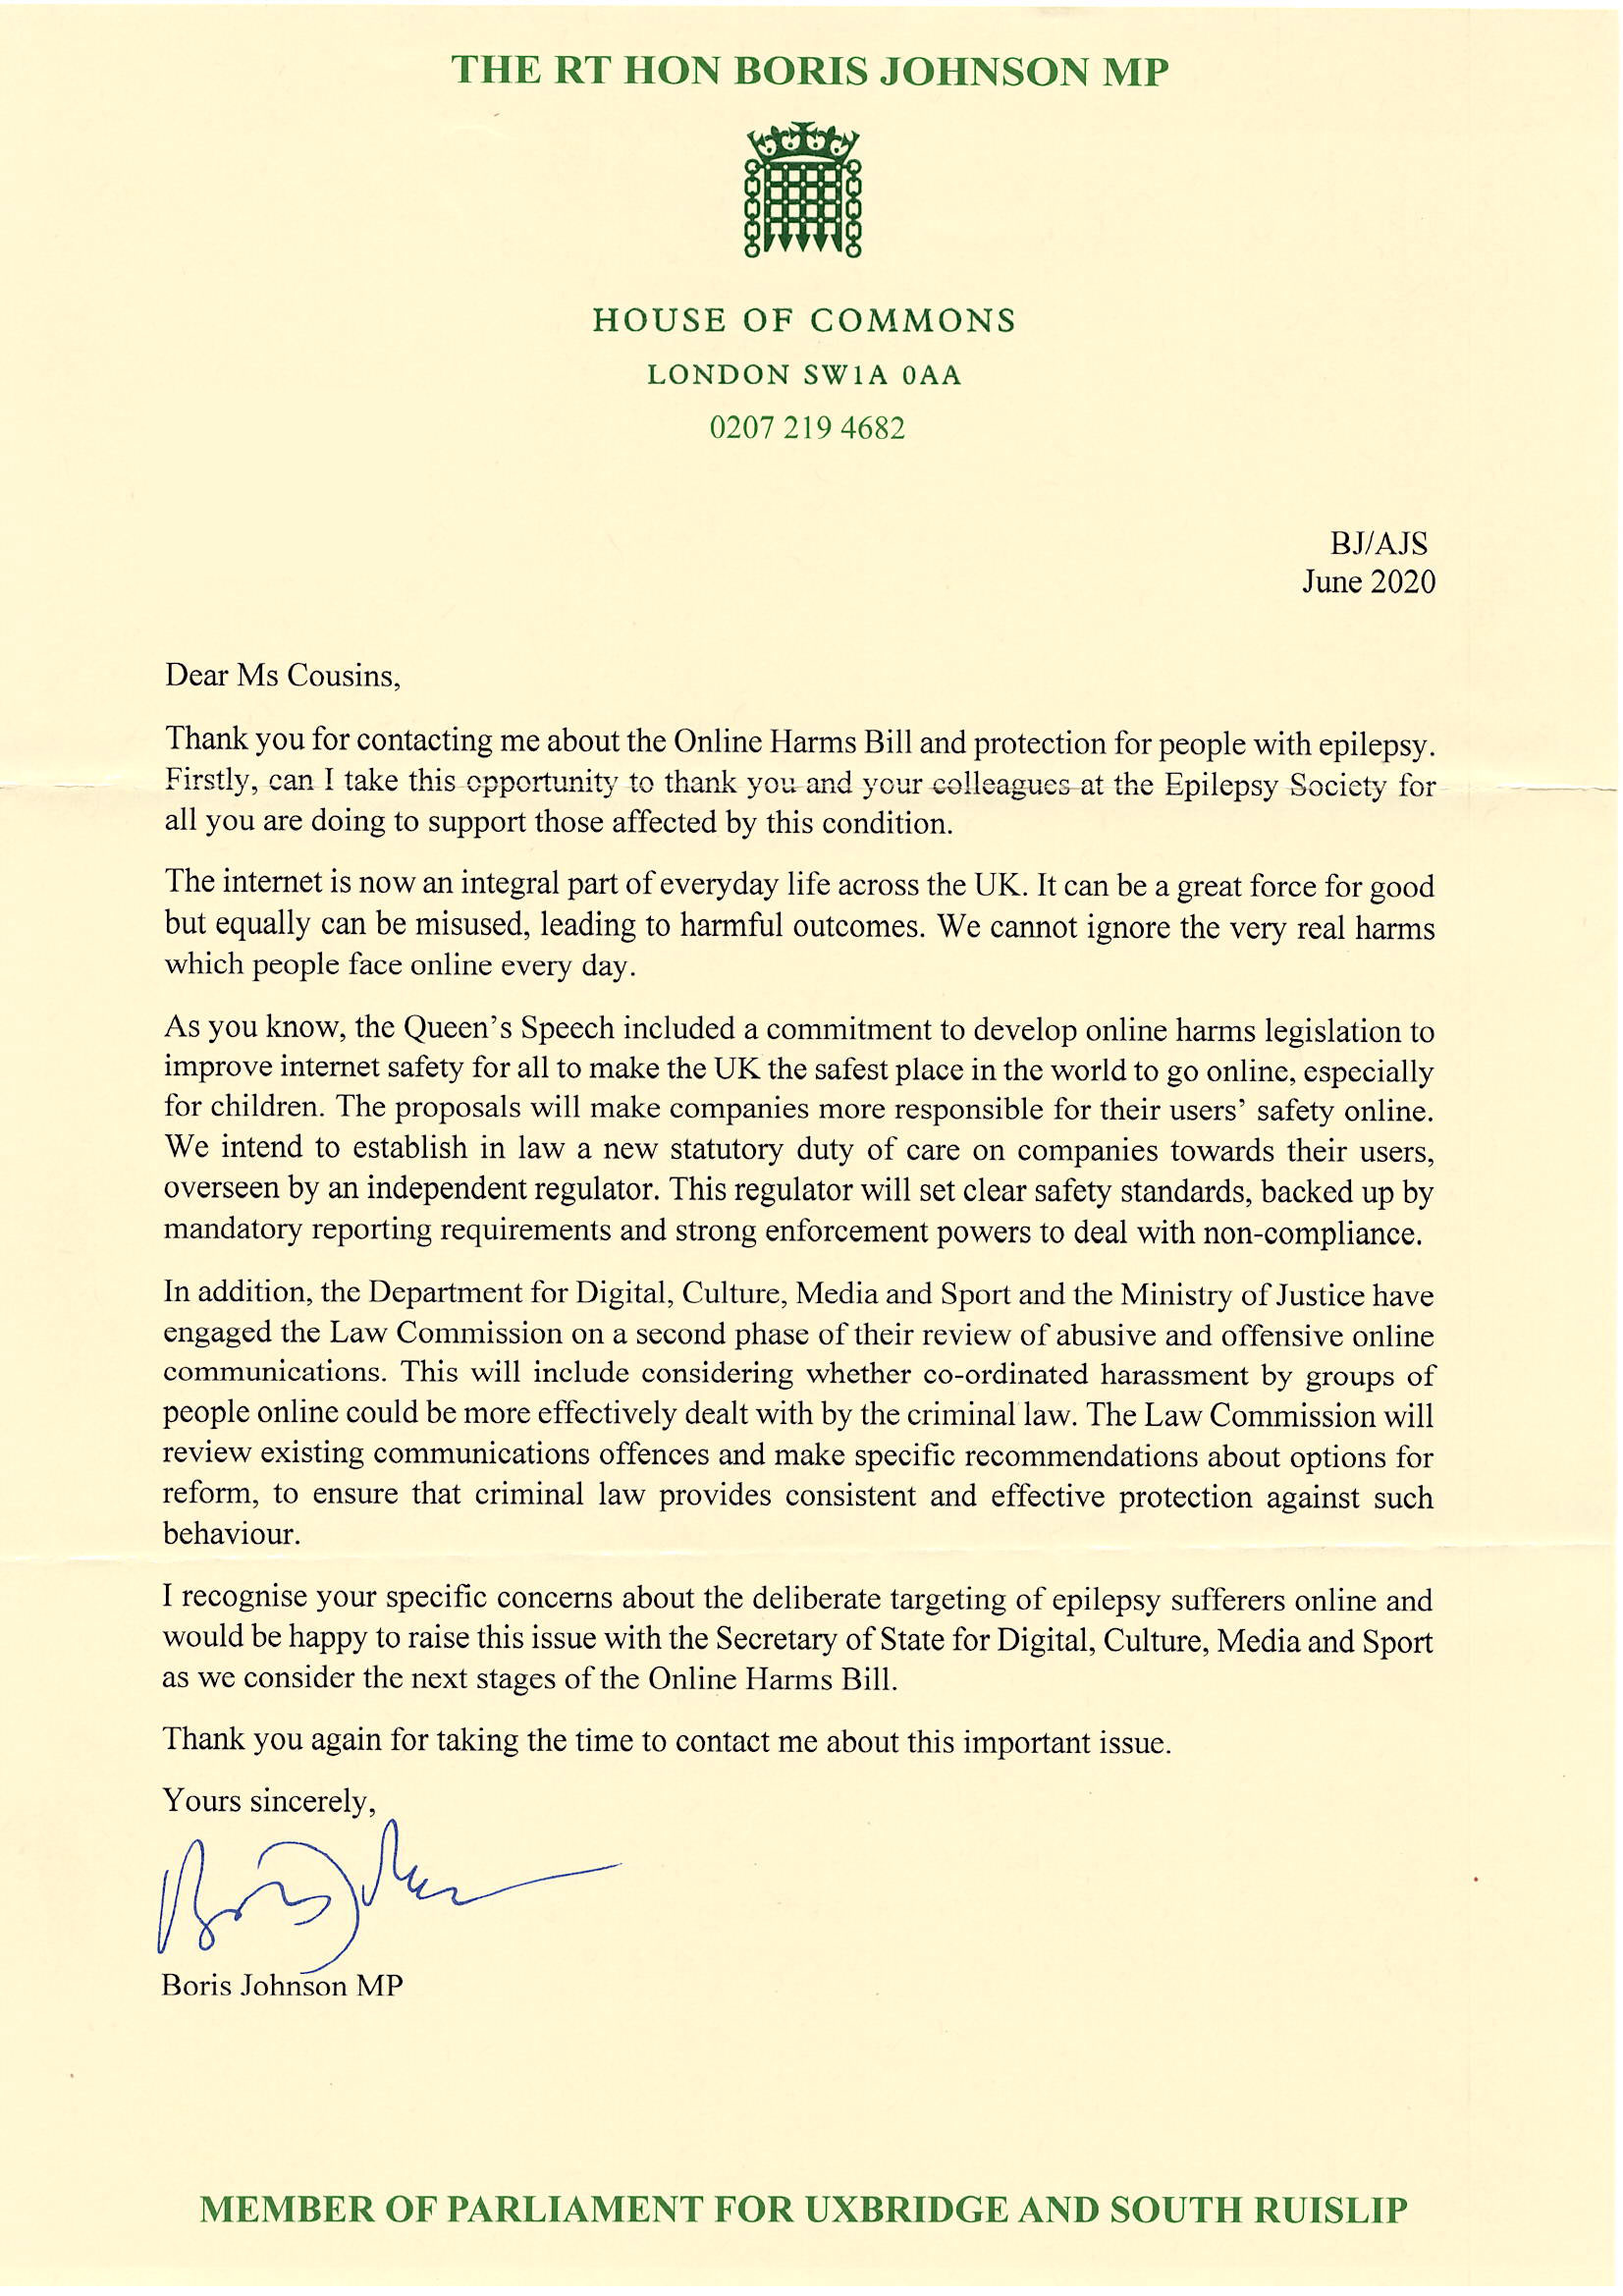 Letter from Boris Johnson